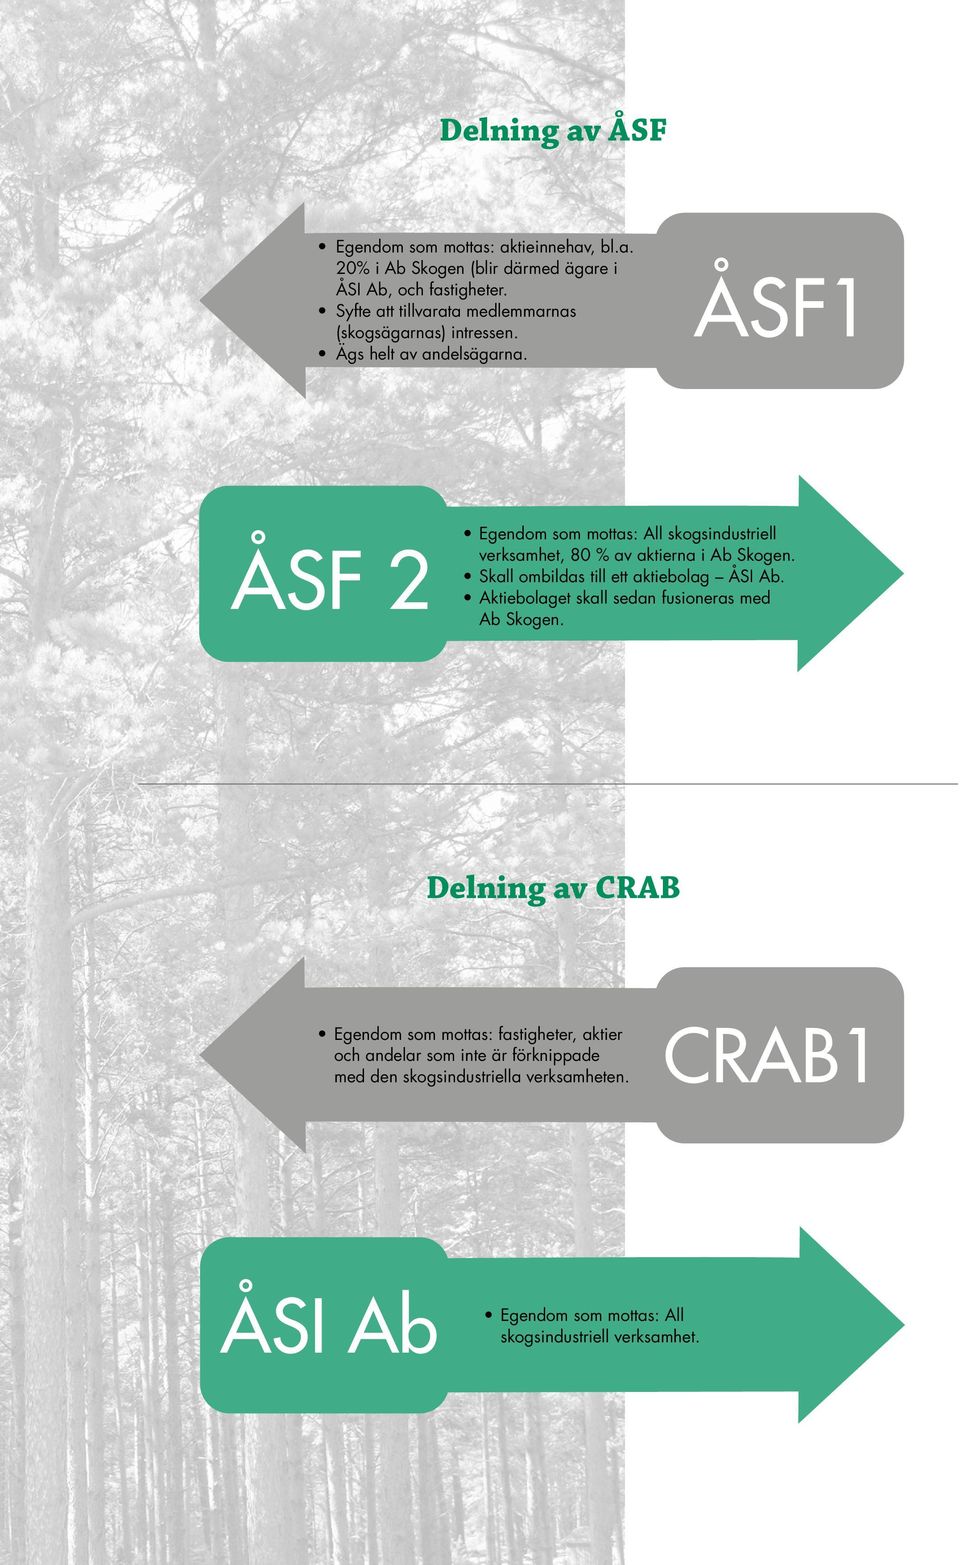 ÅSF 2 ÅSF1 Egendom som mottas: All skogsindustriell verksamhet, 80 % av aktierna i Ab Skogen. Skall ombildas till ett aktiebolag ÅSI Ab.